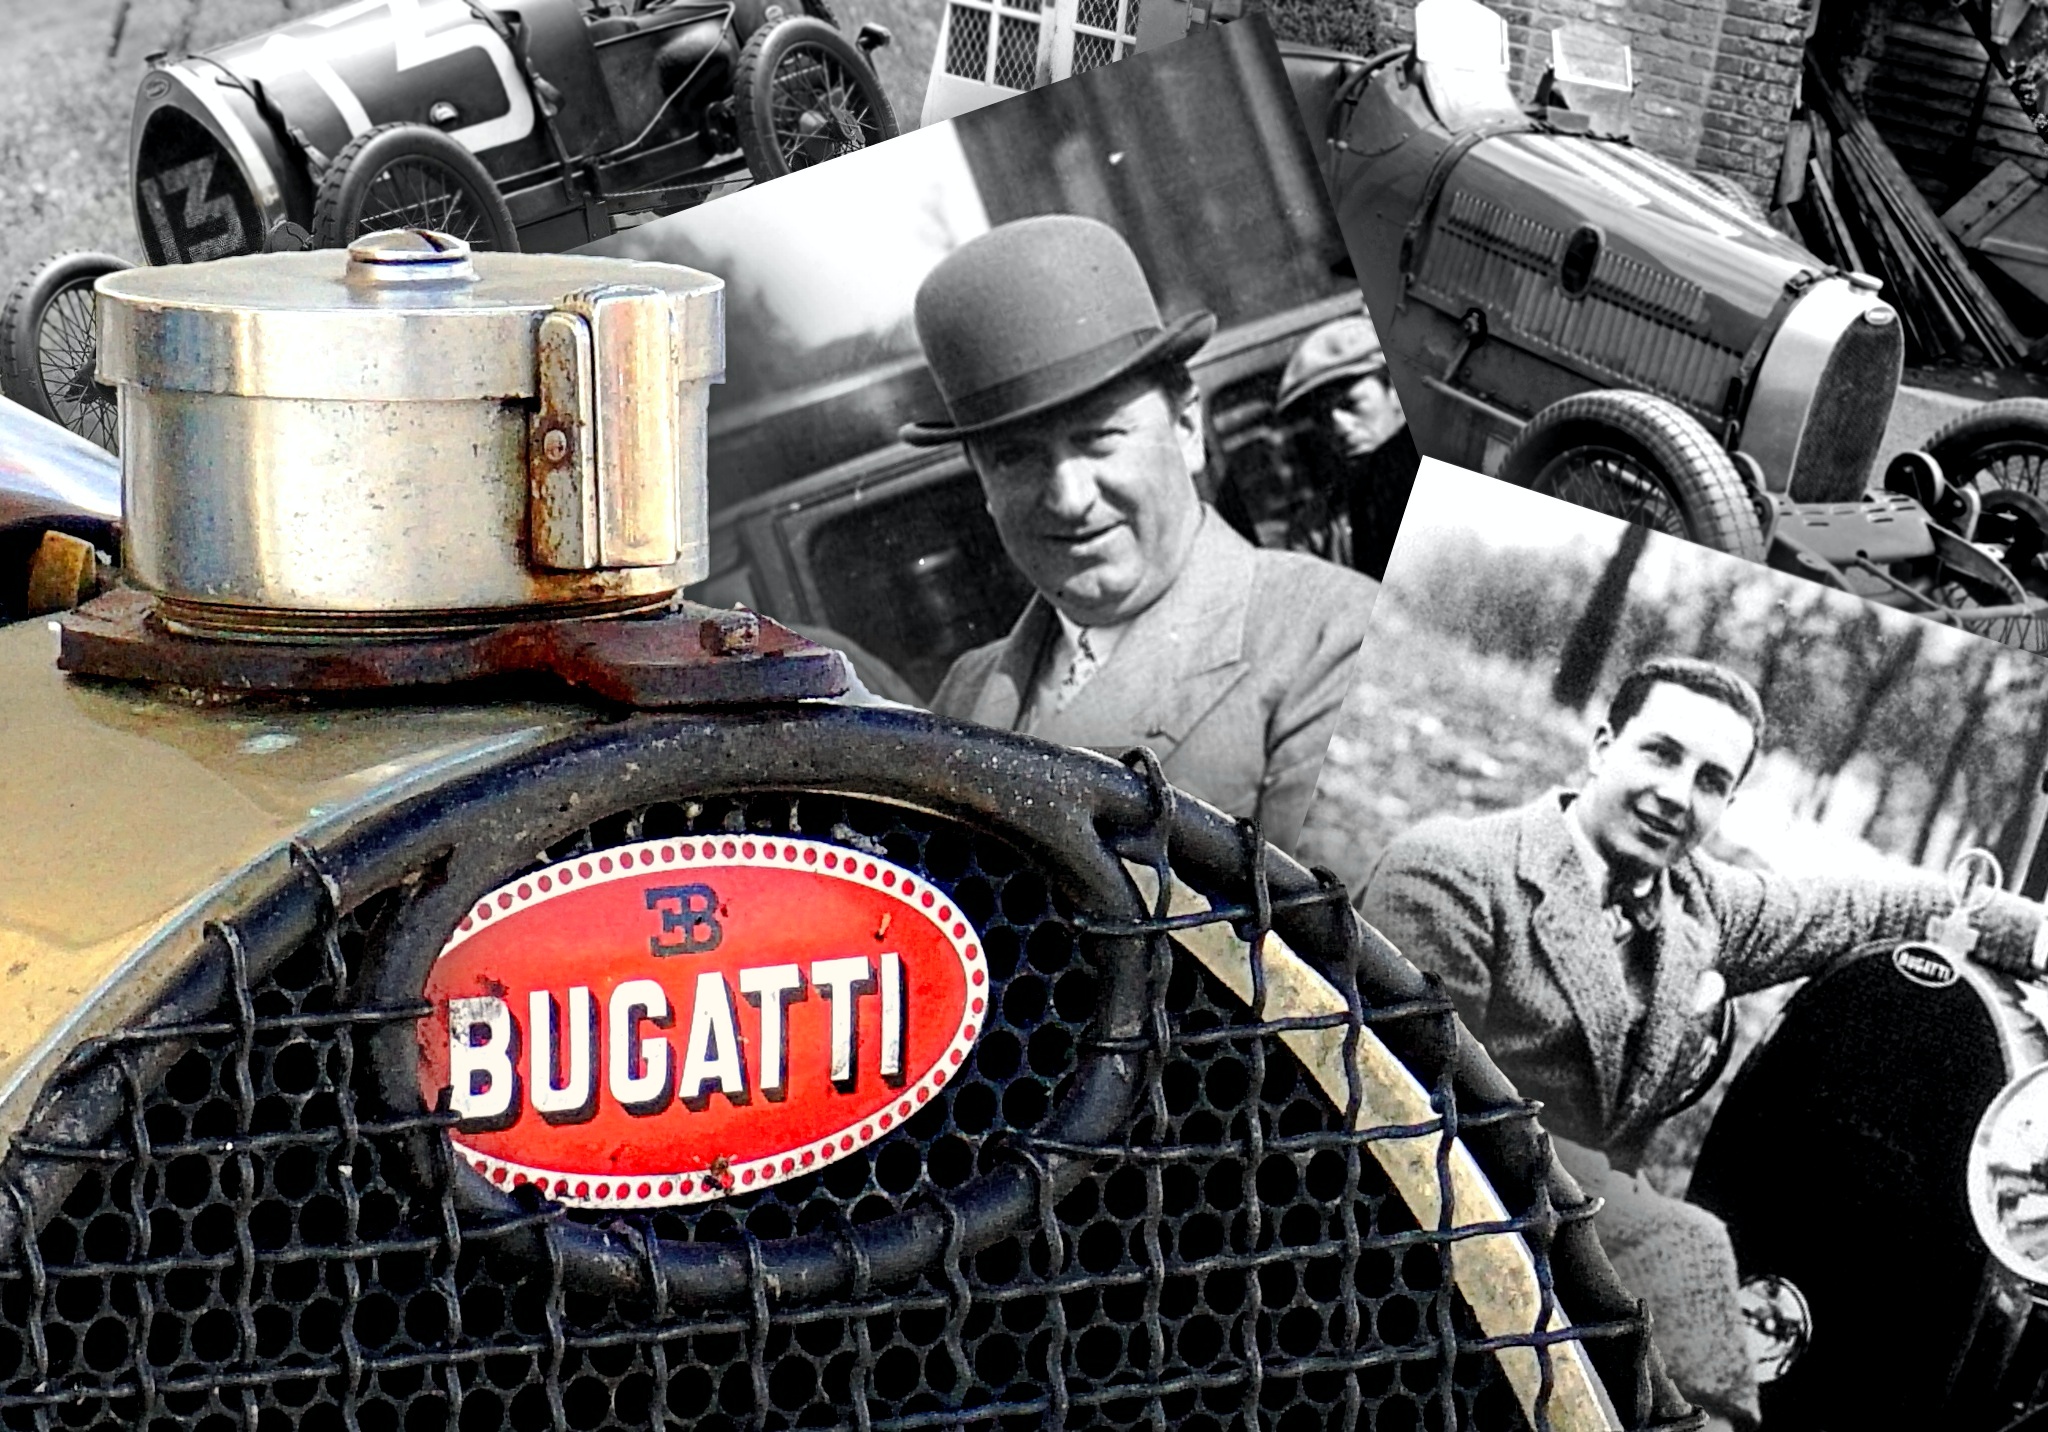 Bugatti, mon amour